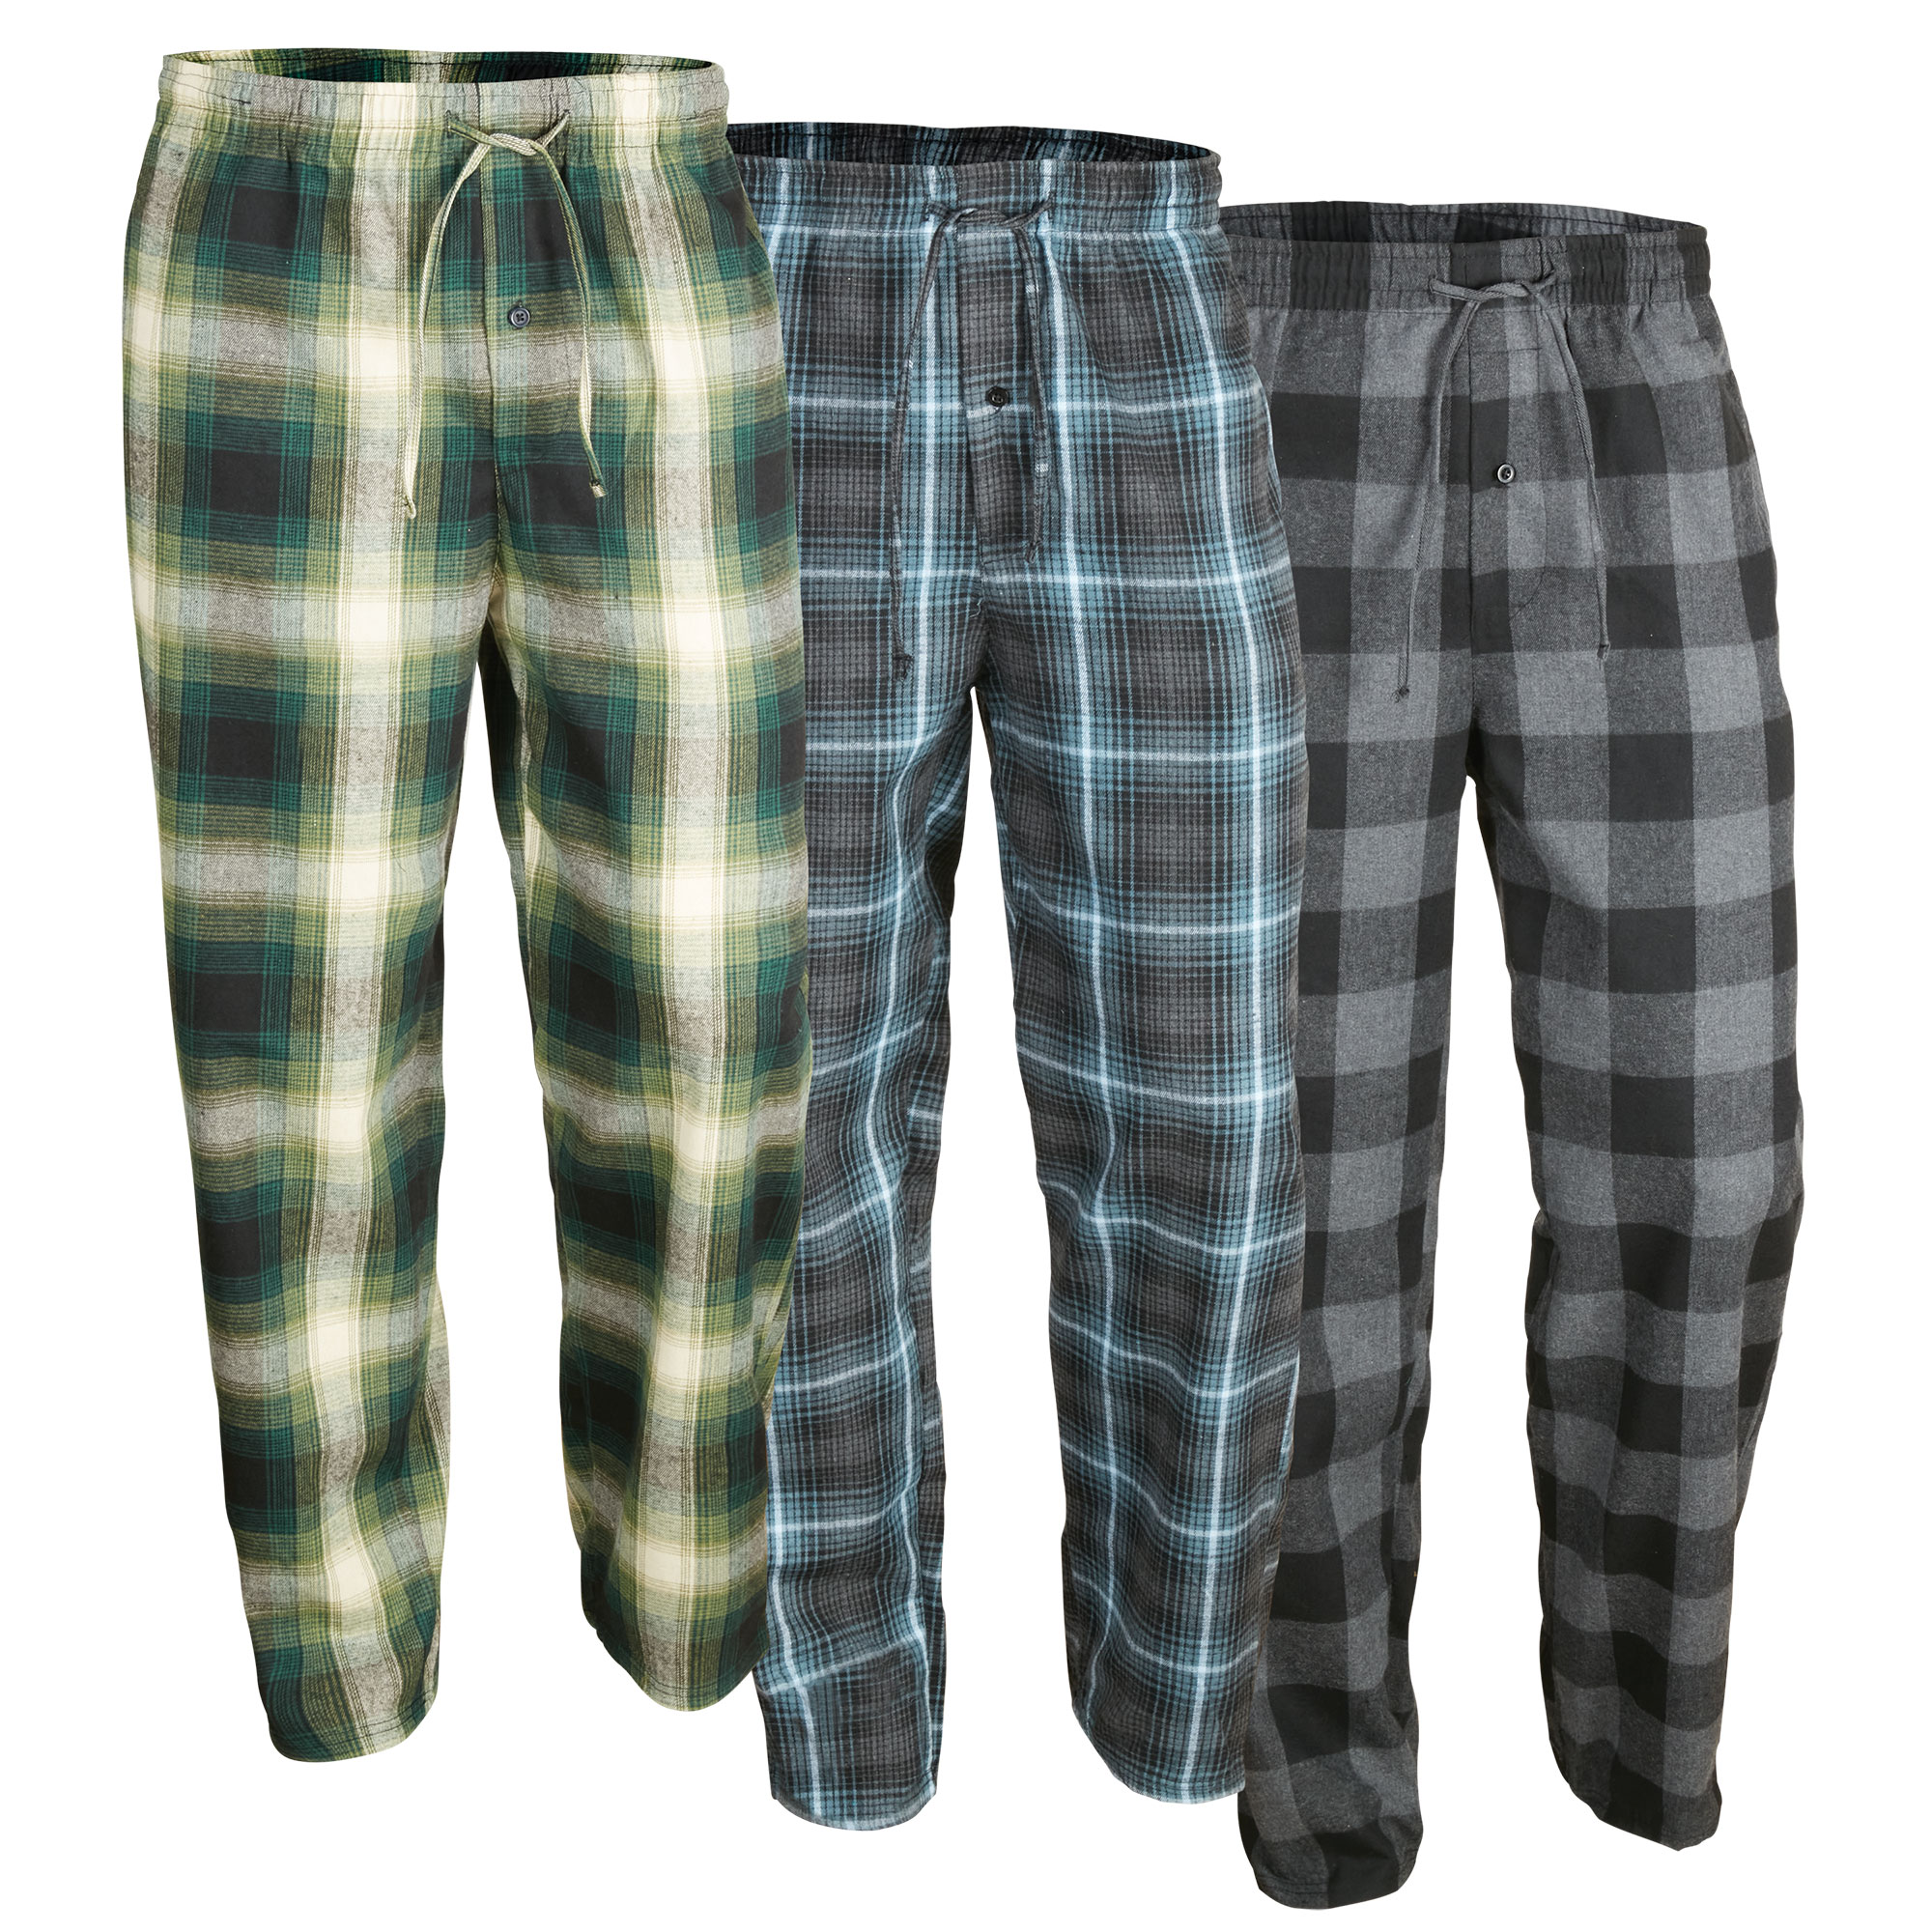 Victory Sportswear Men's Flannel Pants - 3 Pack